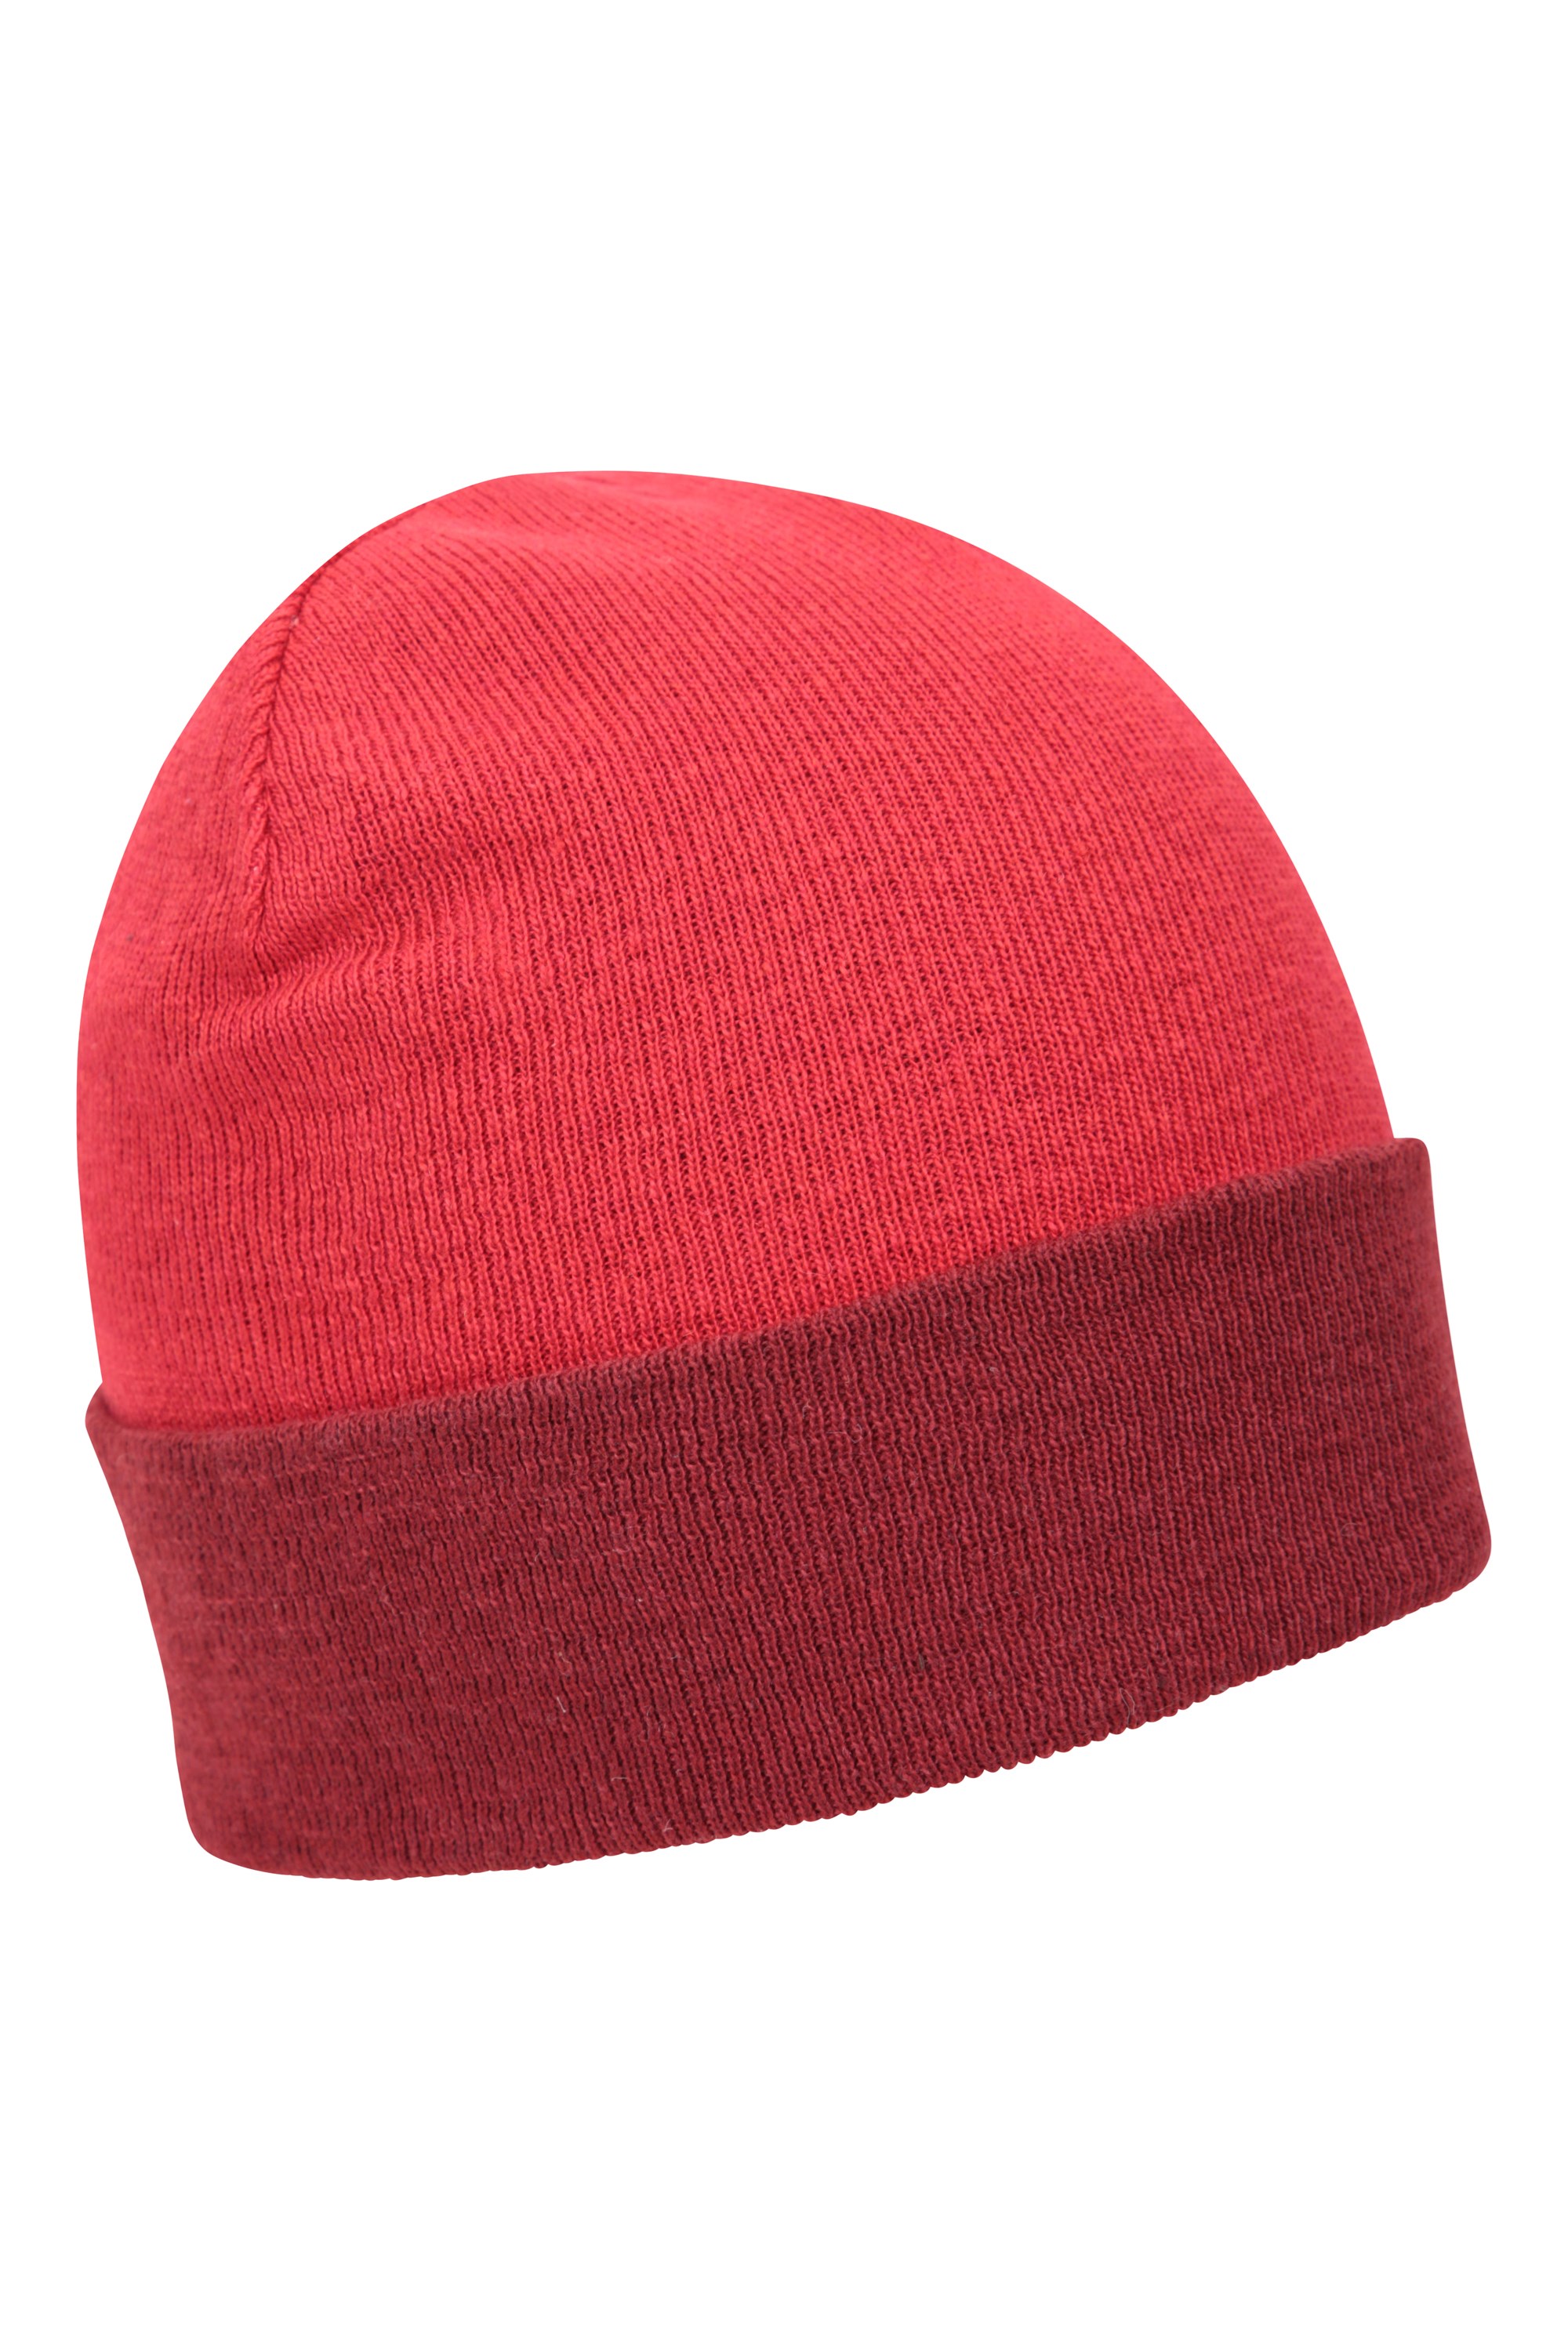 Augusta — dwustronna czapka z materiałów pochodzących z recyklingu - Red